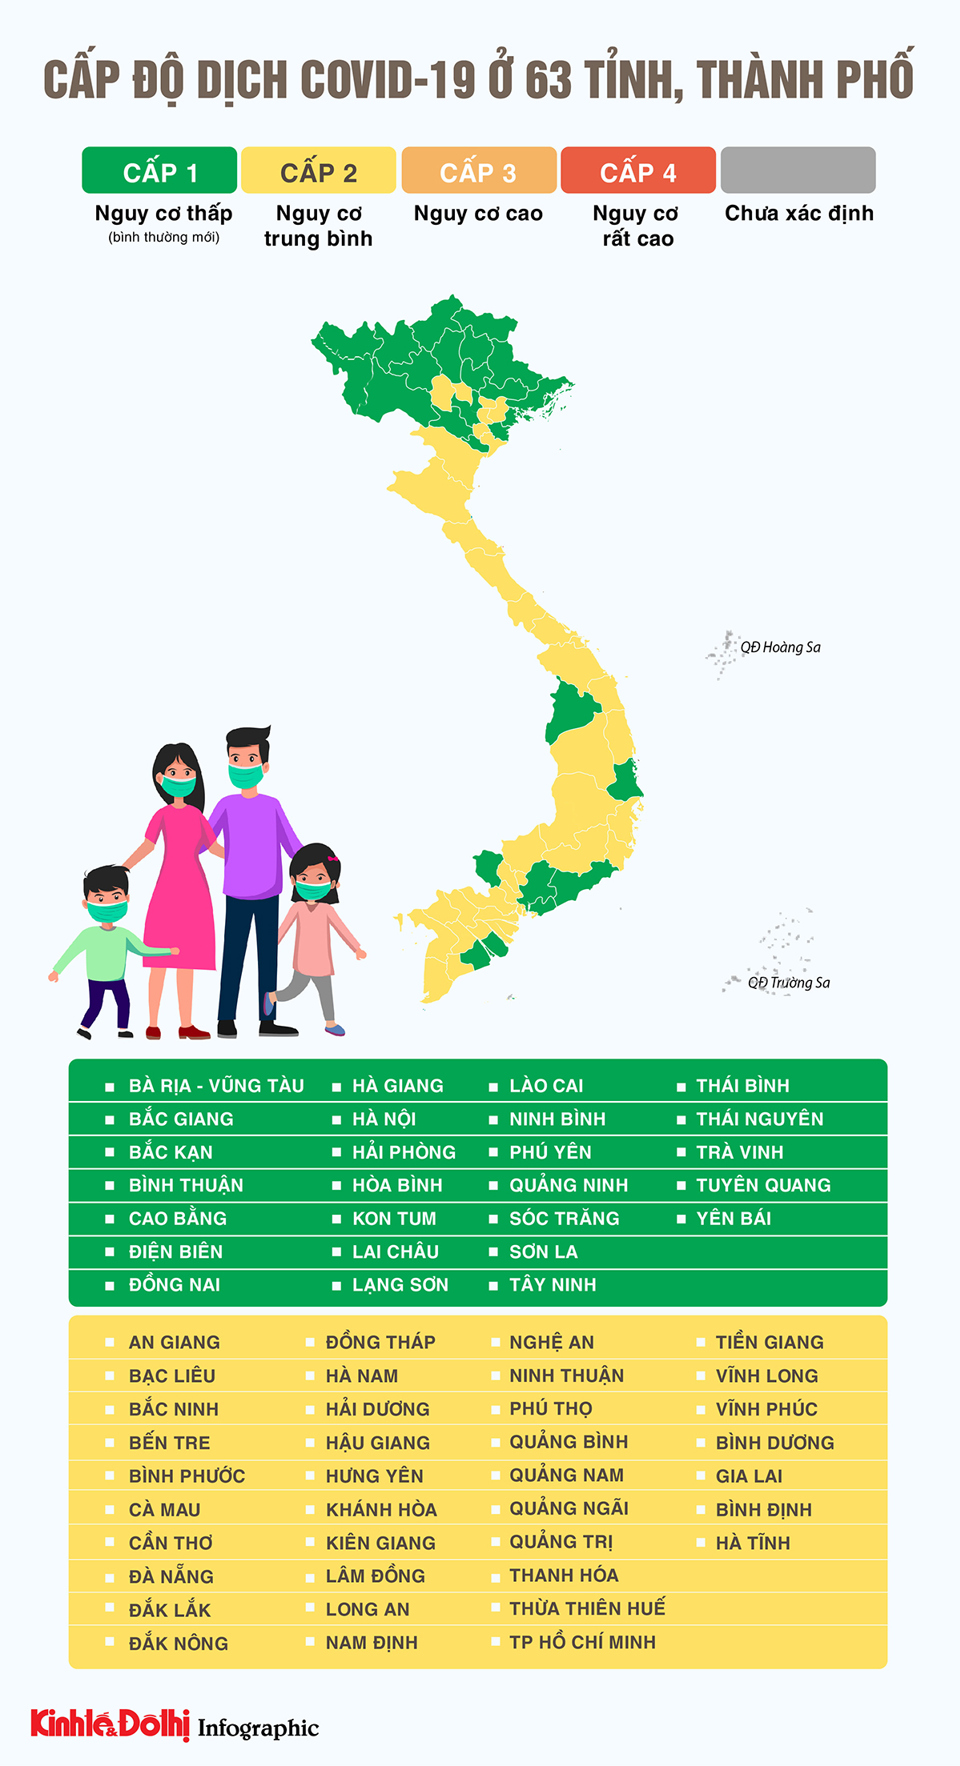 [Infographic] 63 tỉnh thành đánh giá xong cấp độ dịch Covid-19 - Ảnh 1